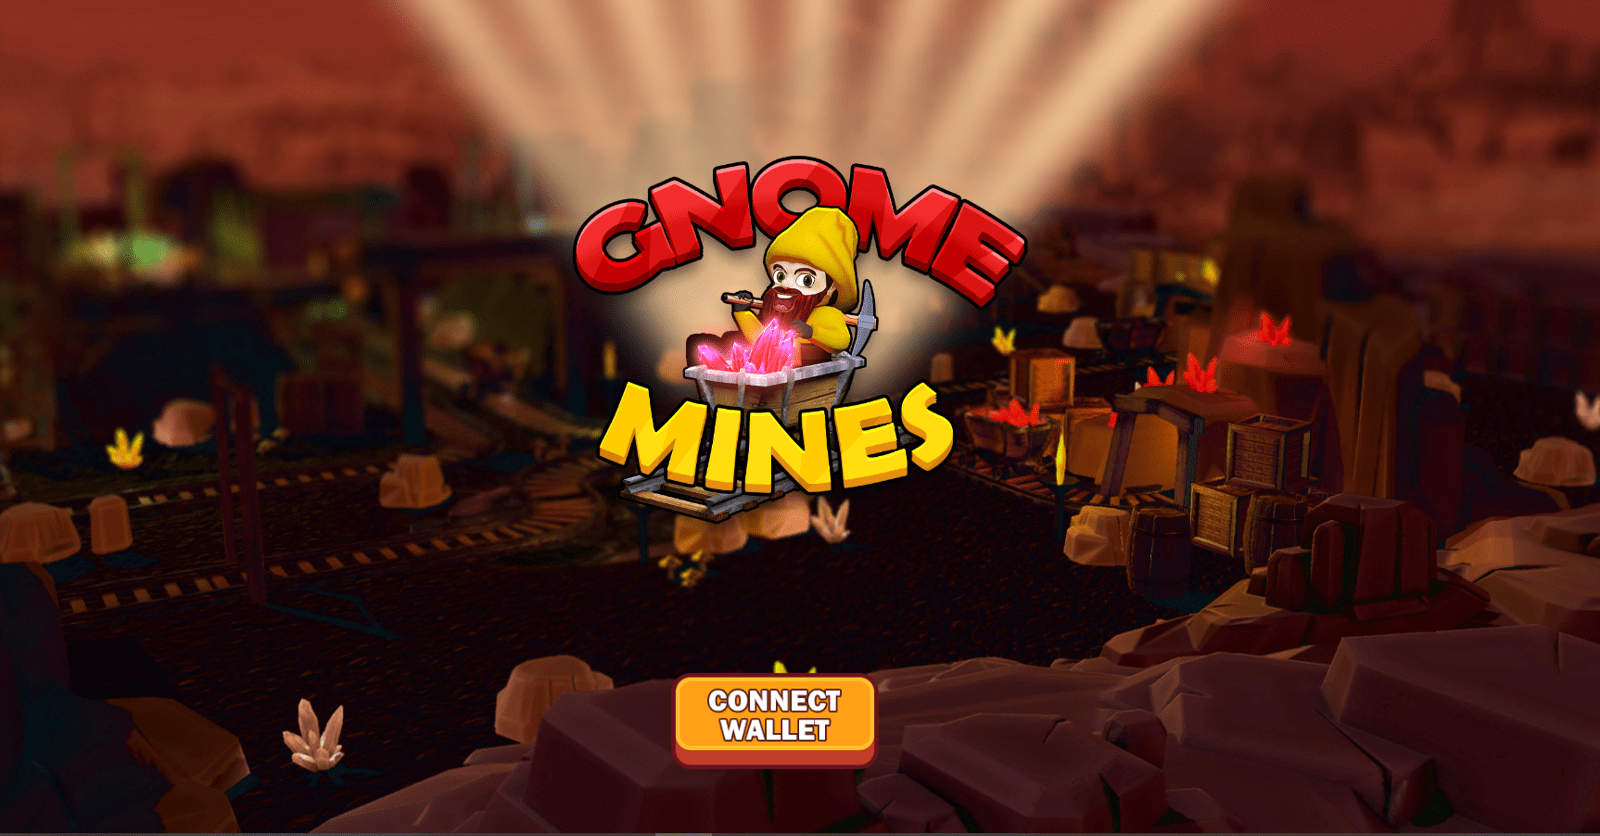 Gnome Mines(ノームマインズ)の始め方・稼ぎ方